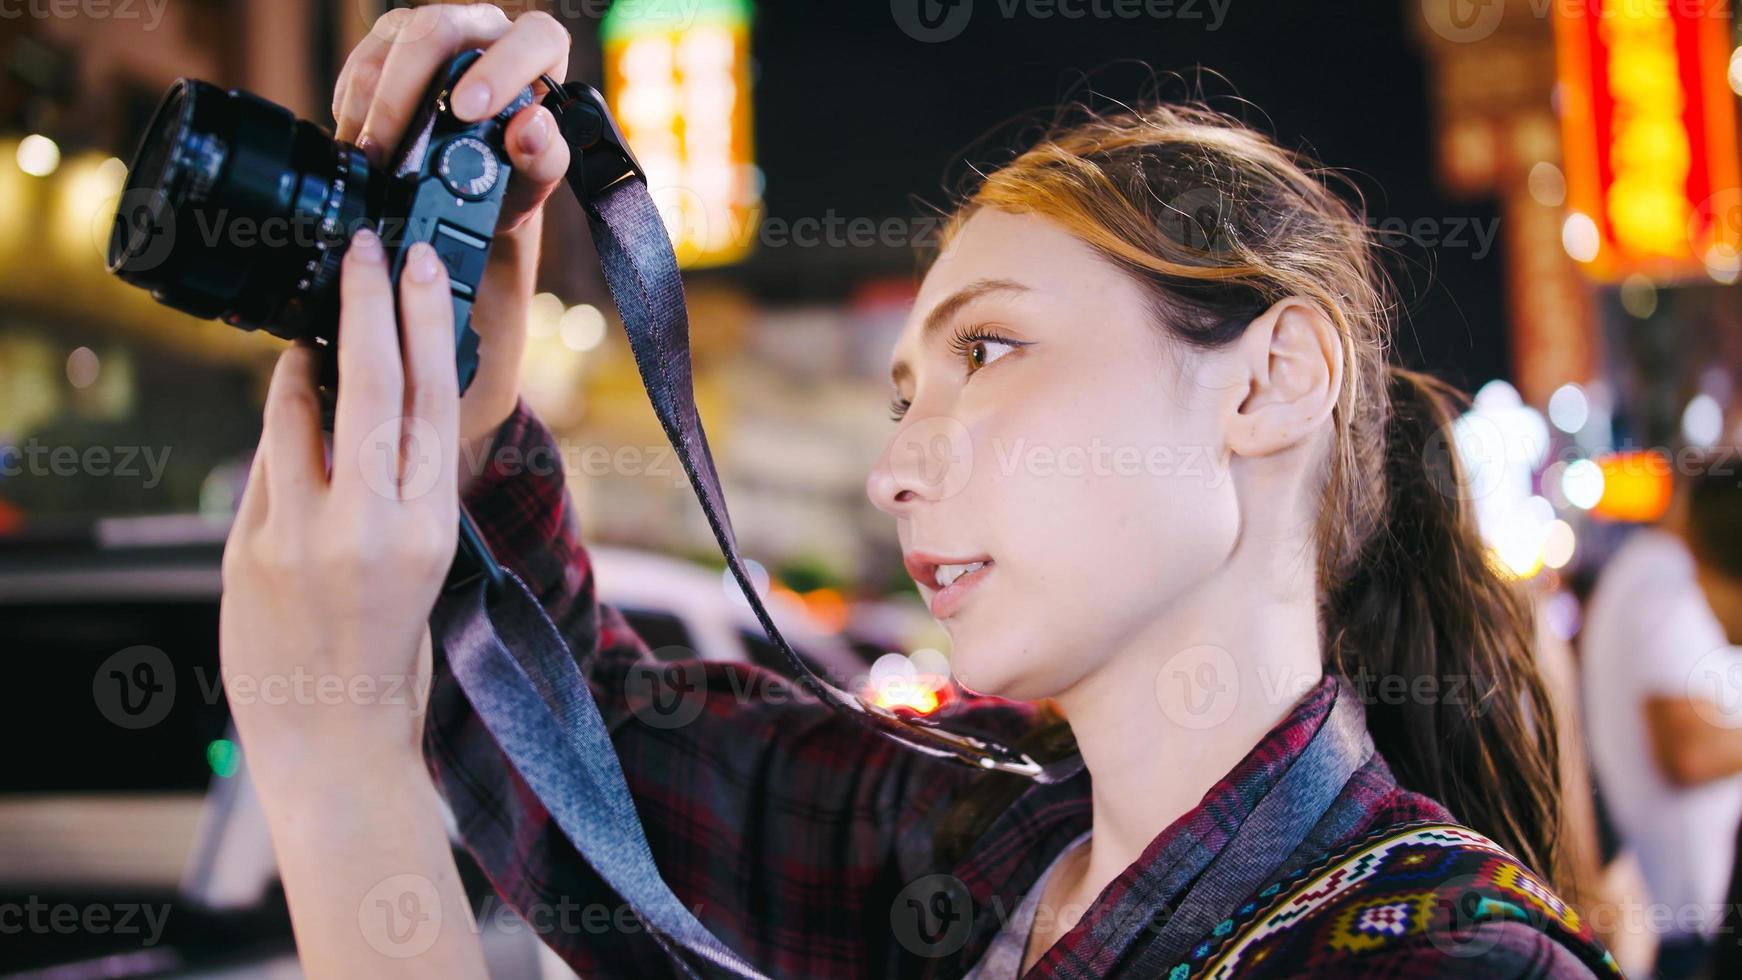 una turista disfruta tomando fotos de la vista nocturna de yaowarat road o chinatown en bangkok, tailandia.